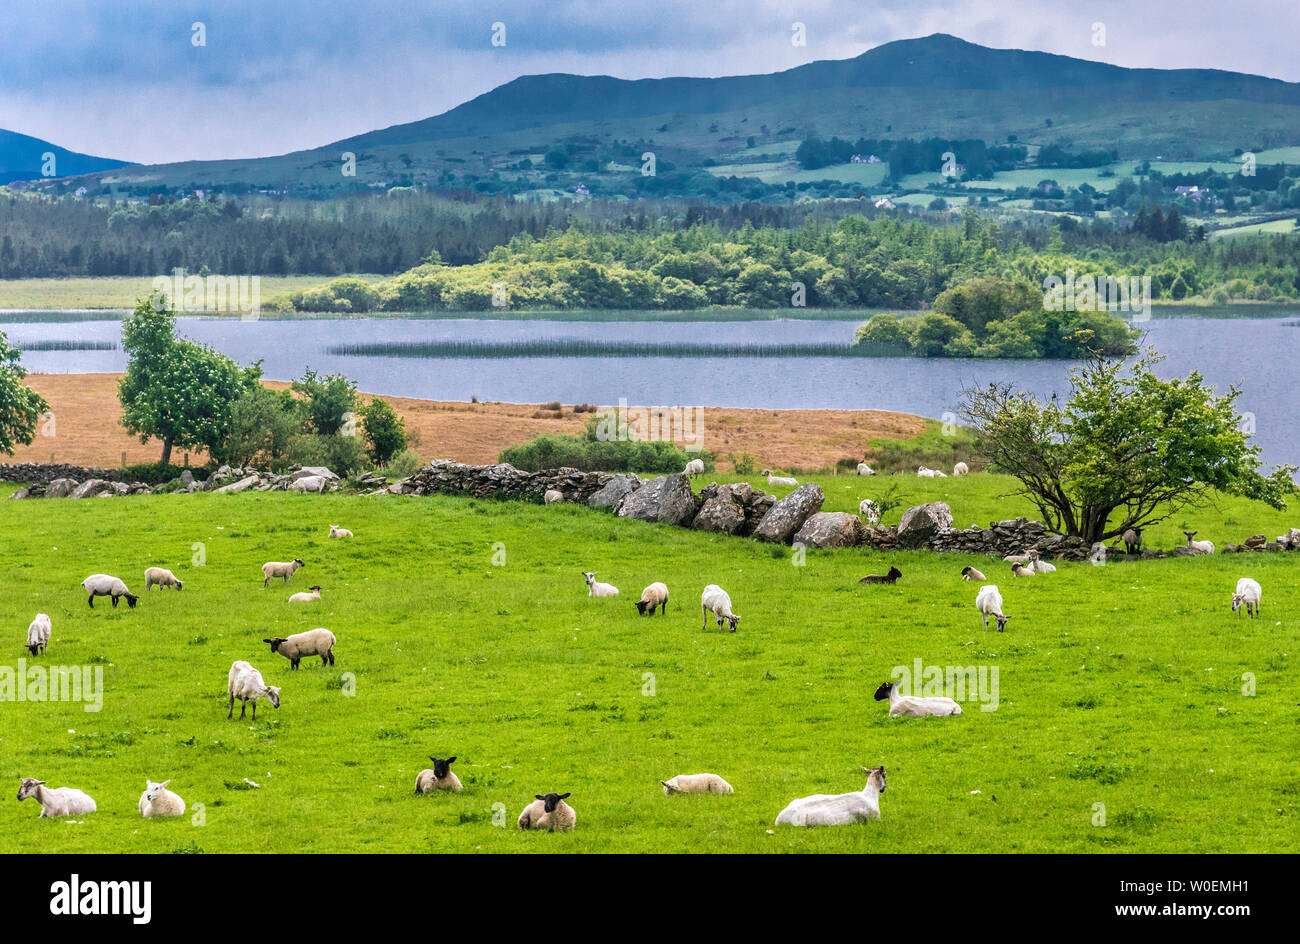 Republic of Ireland, County Mayo, the Fjord of Killary and black-headed sheeps Stock Photo